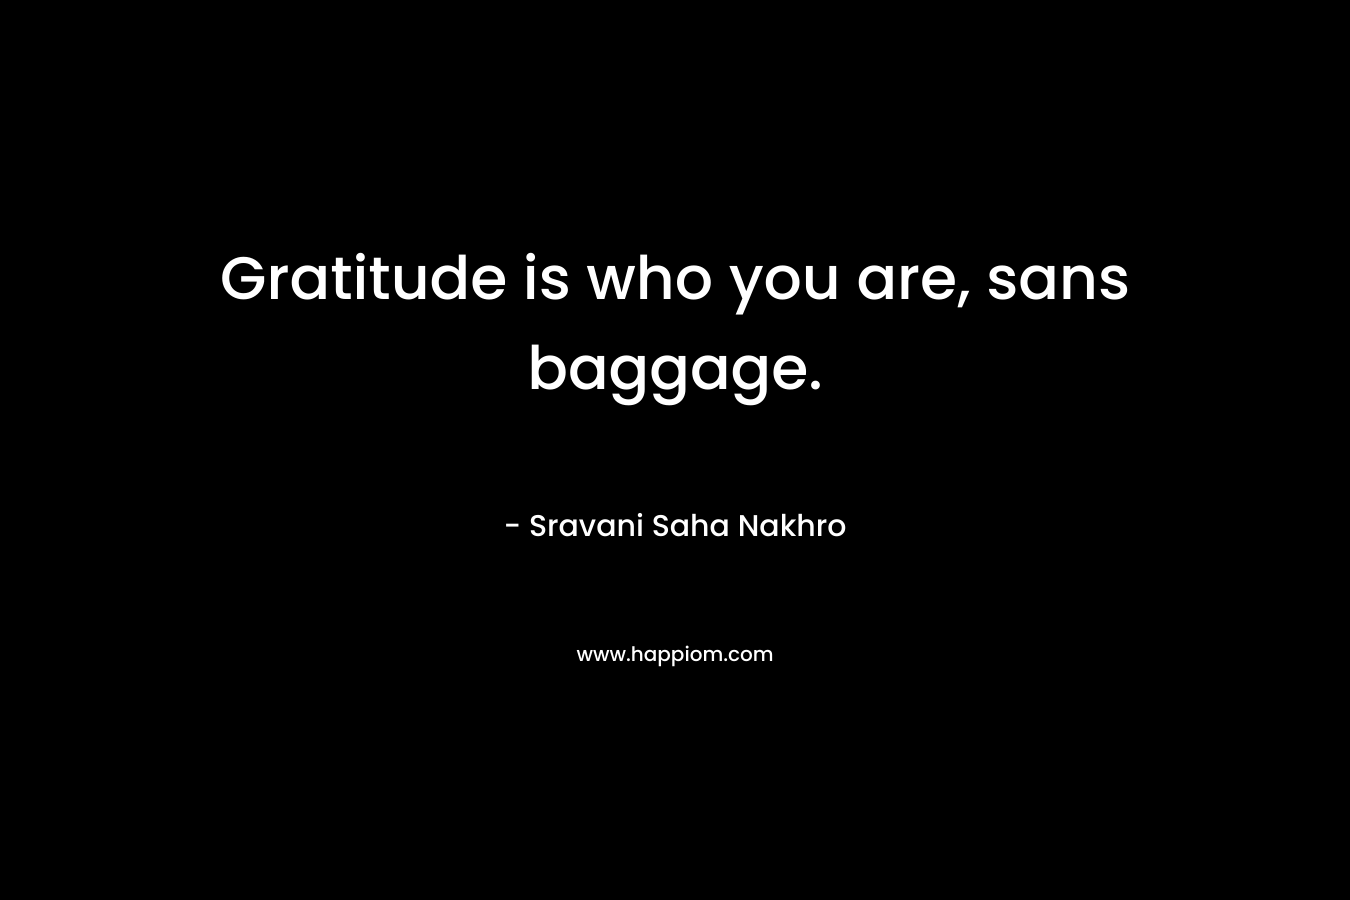 Gratitude is who you are, sans baggage. – Sravani Saha Nakhro